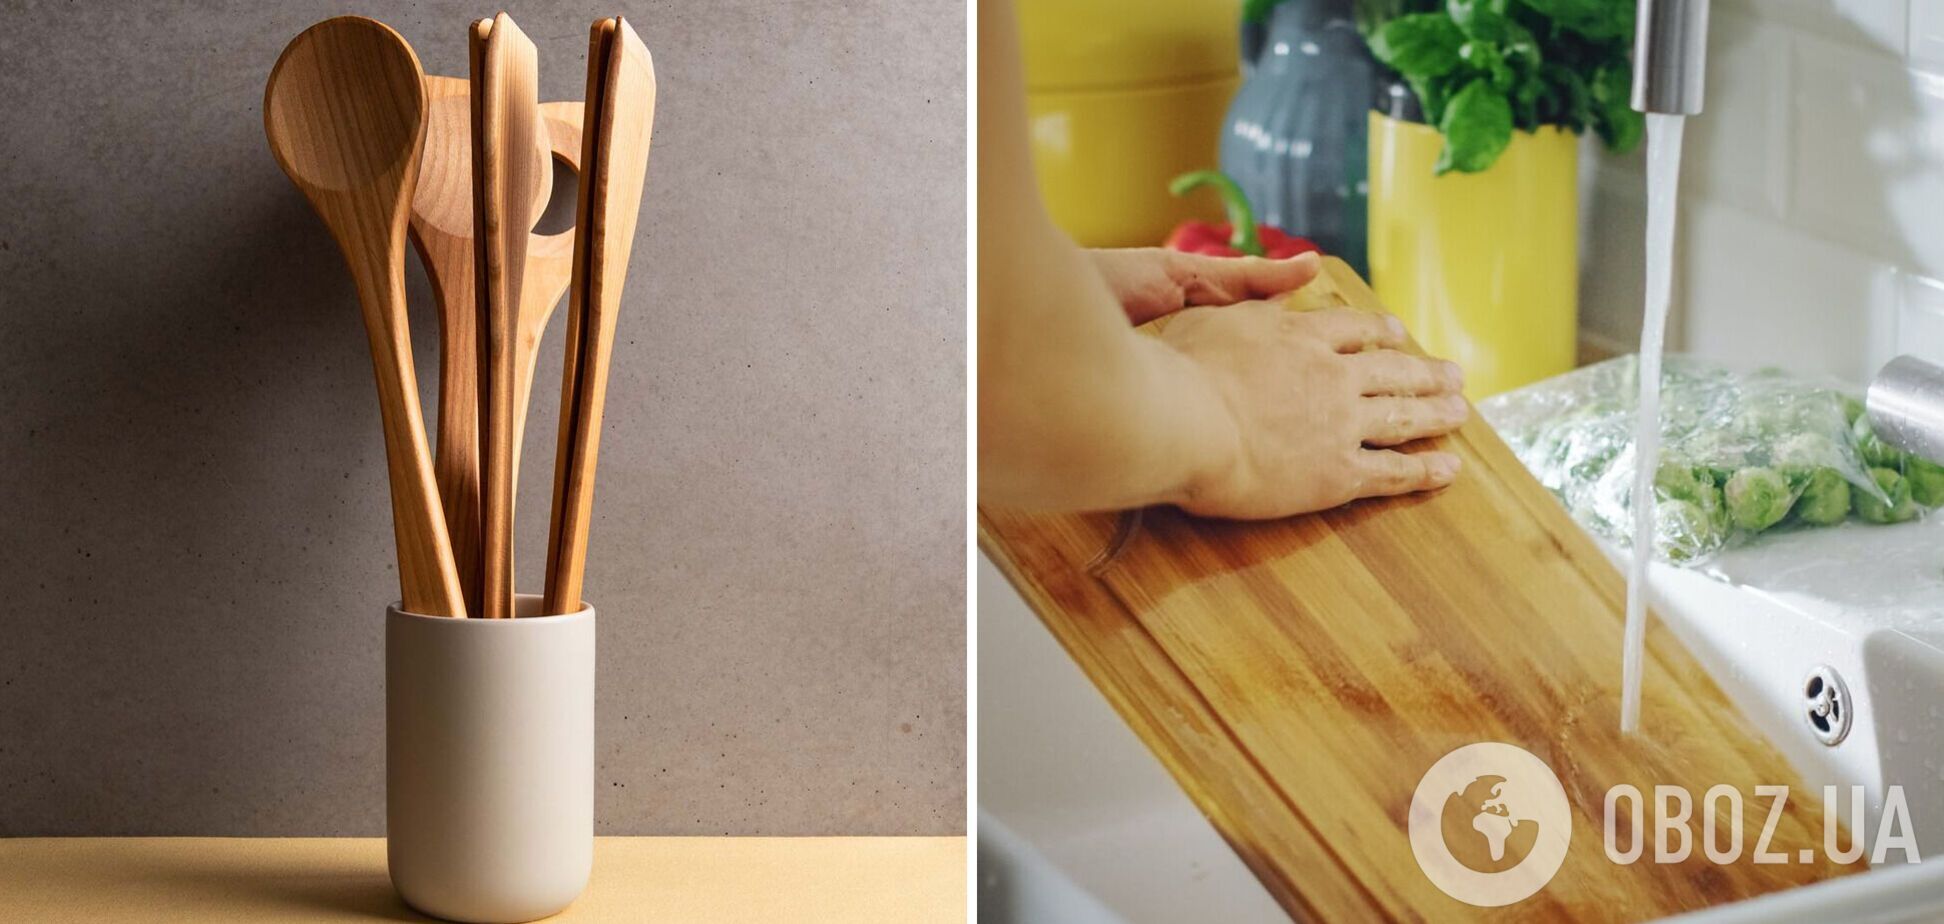 Як мити дерев’яні ложки і лопатки, щоб не було тріщин і бактерій: найкращі способи